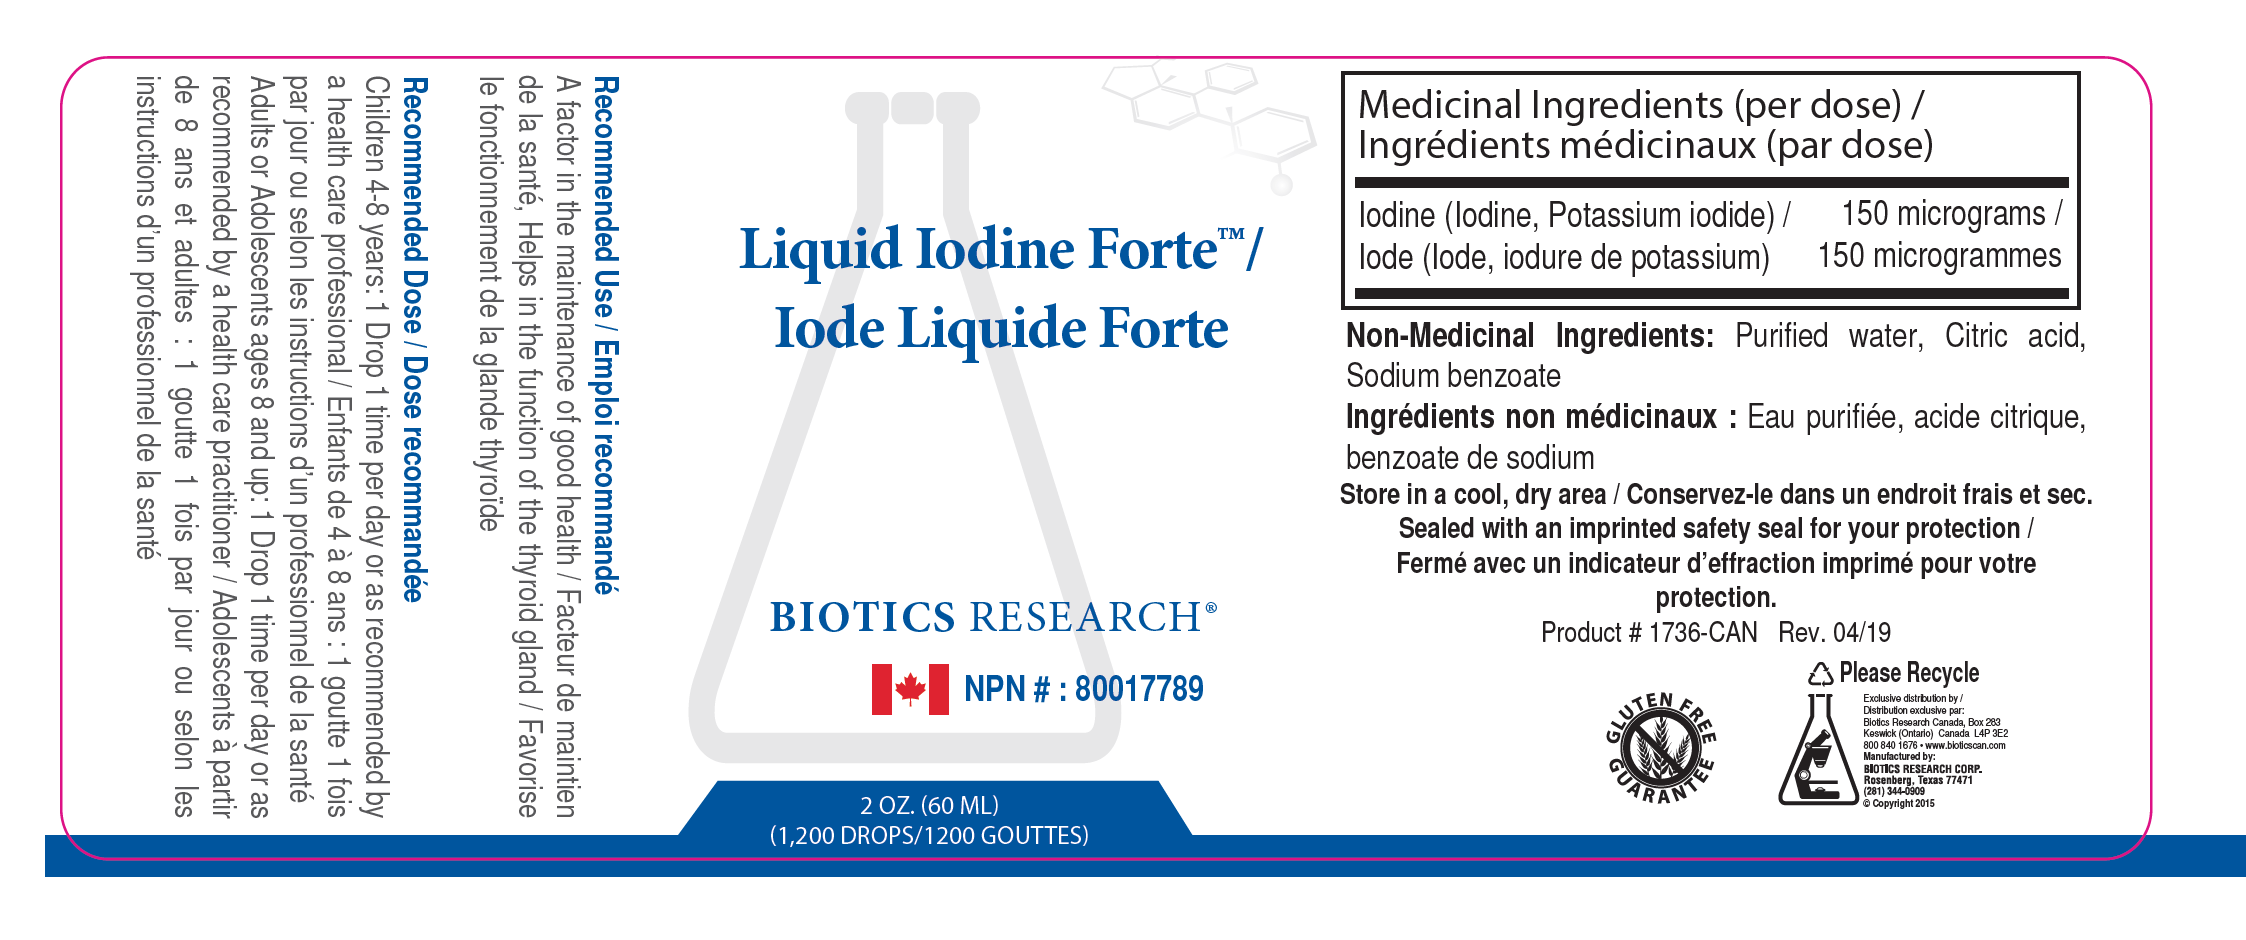 Liquid Iodine Forte